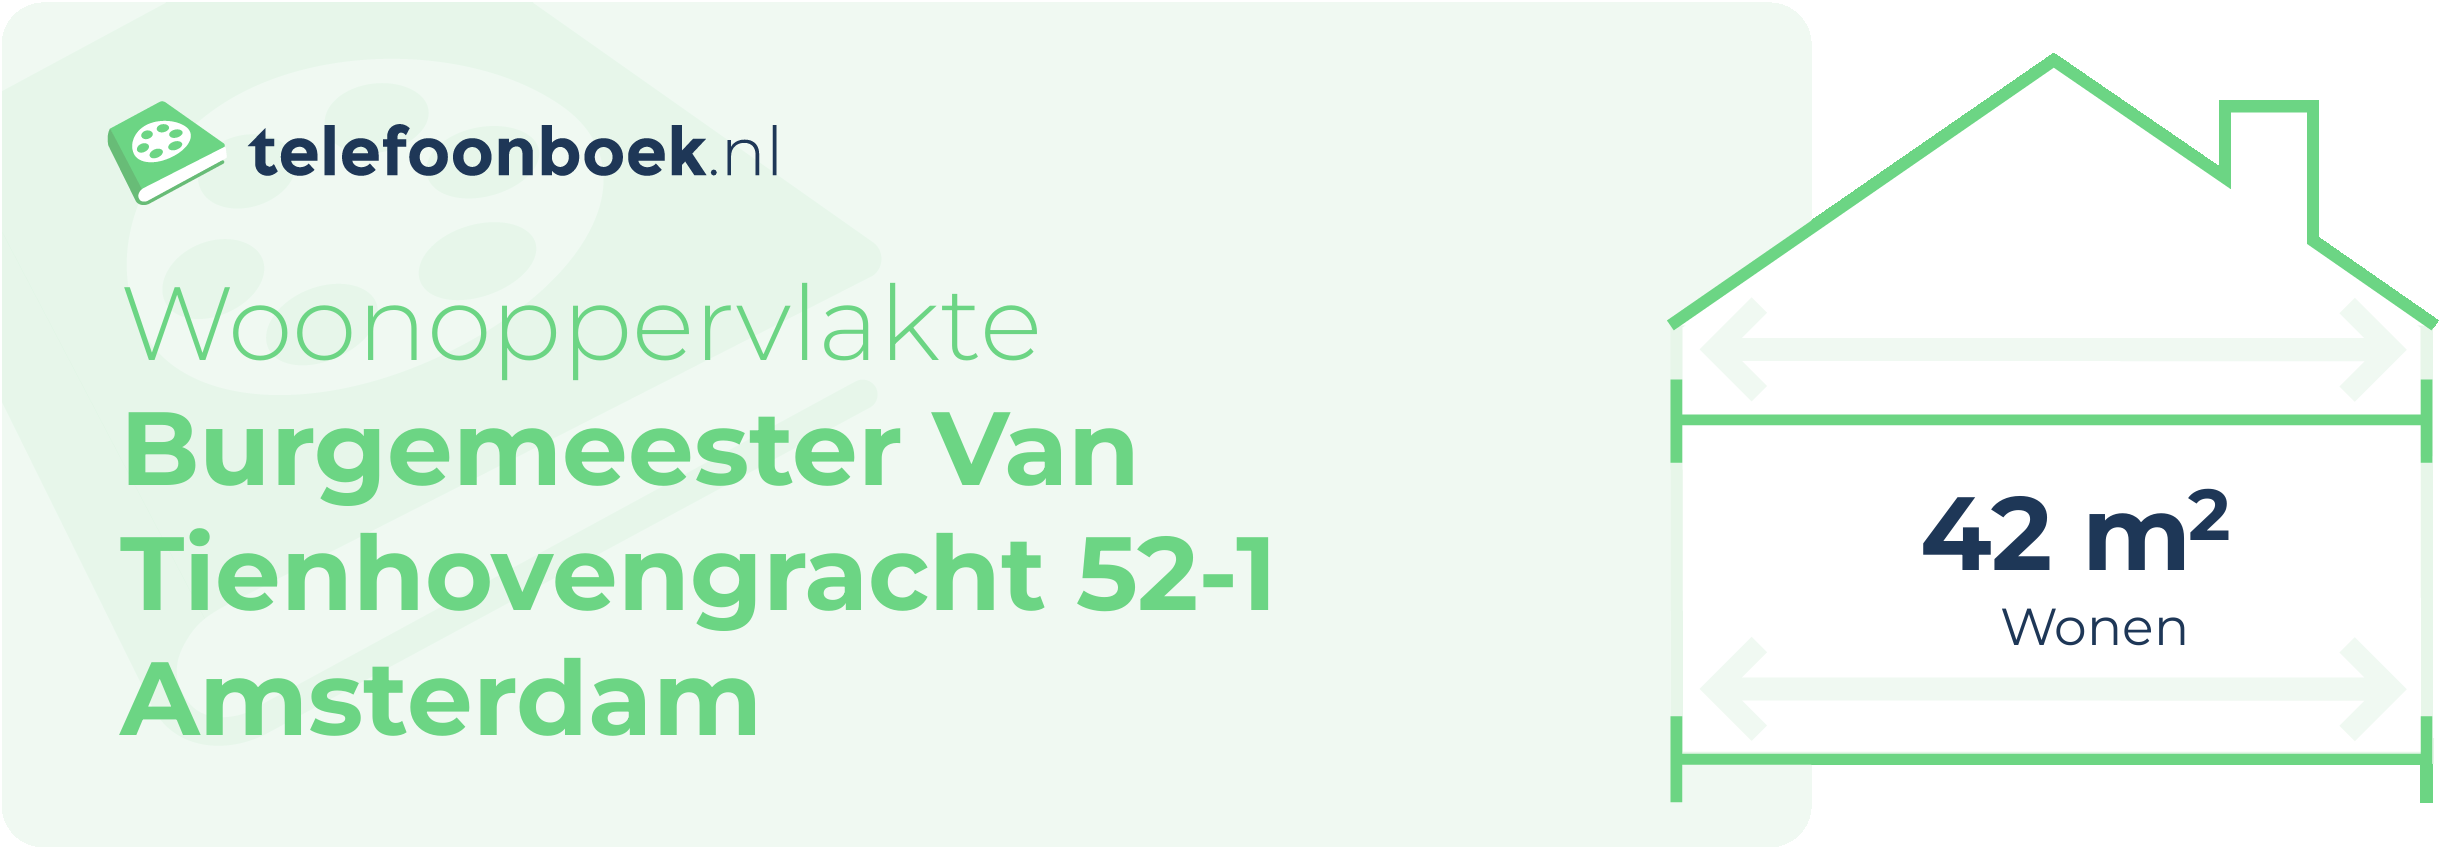 Woonoppervlakte Burgemeester Van Tienhovengracht 52-1 Amsterdam